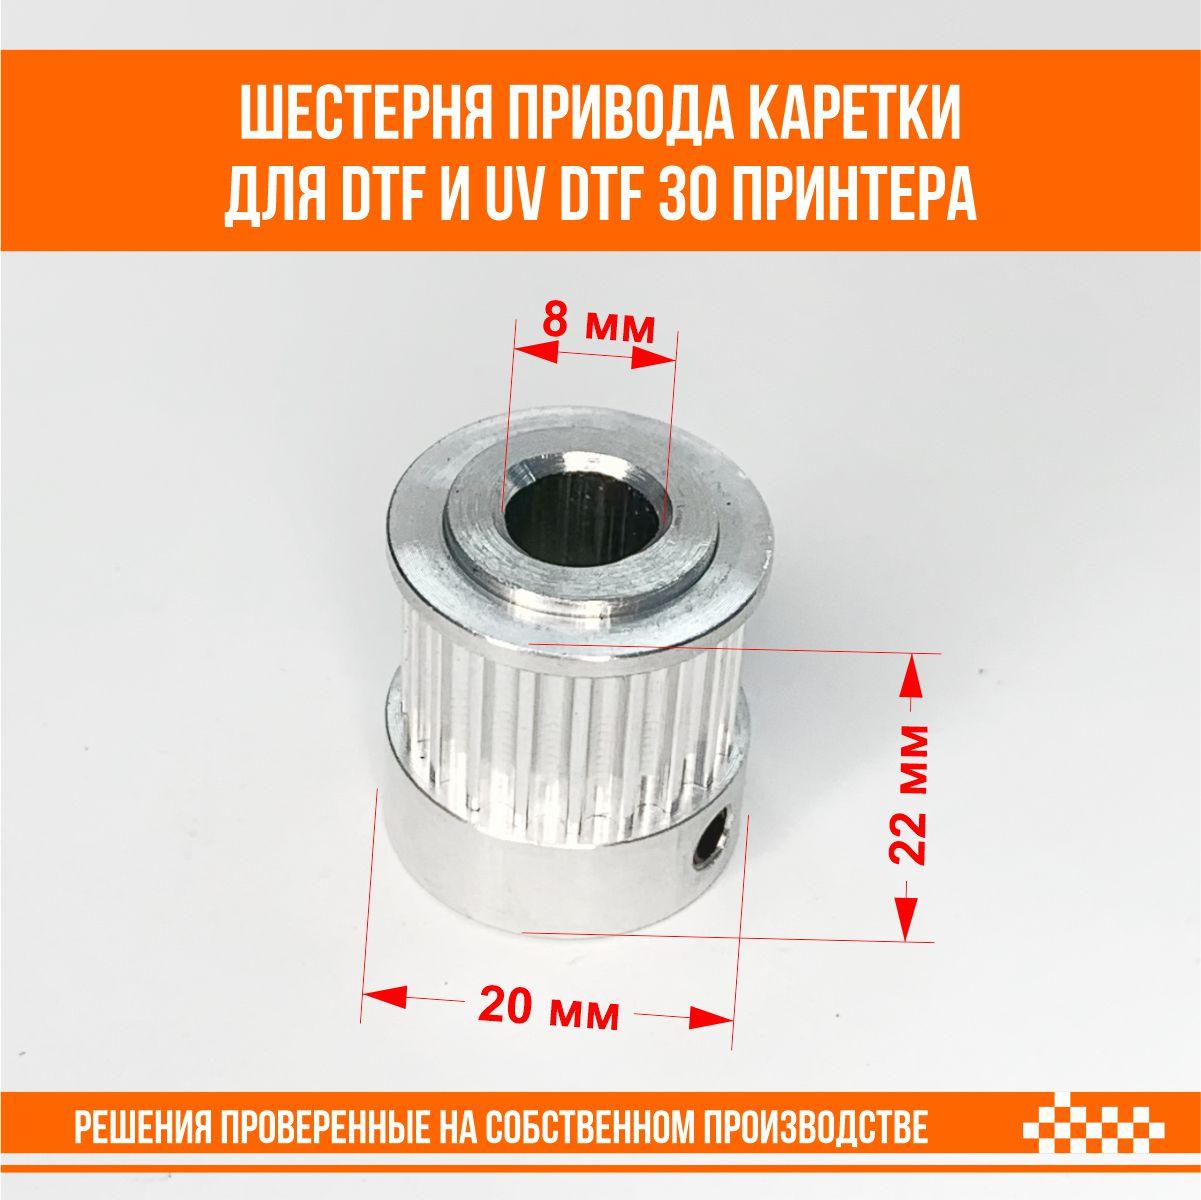 Шестерня привода каретки для DTF и UV DTF 30 принтера, фото 1